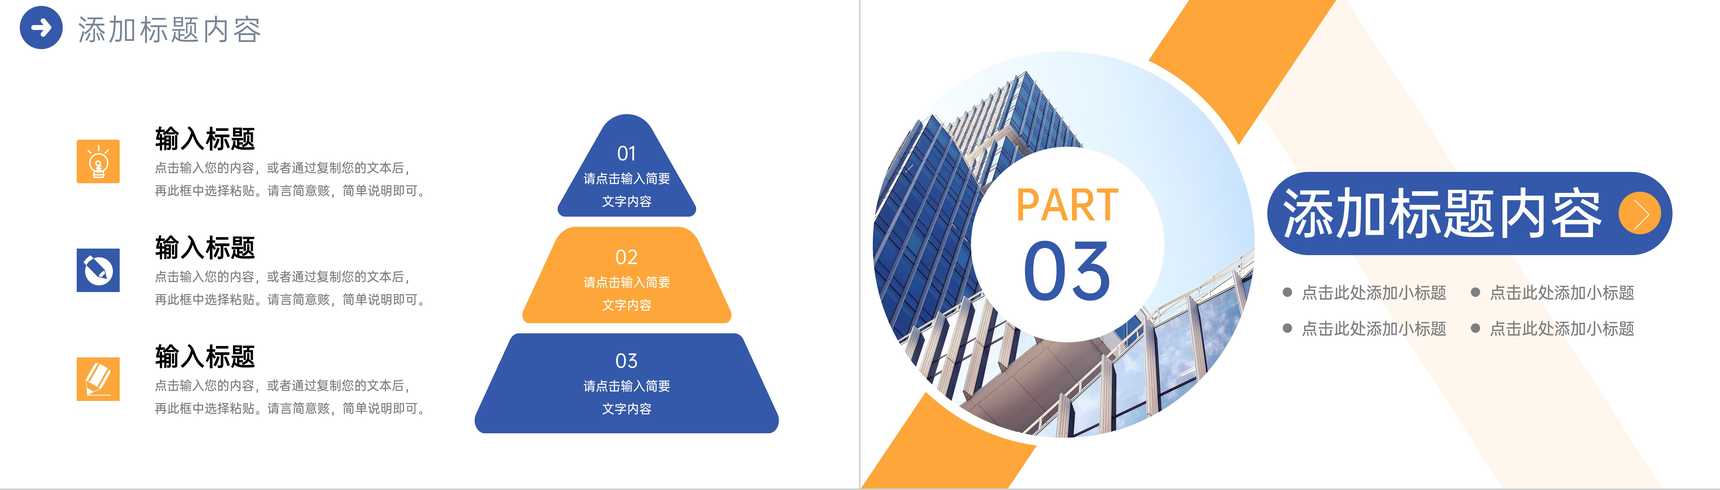 蓝黄撞色商务公司高效团队建设企业介绍PPT模板-6